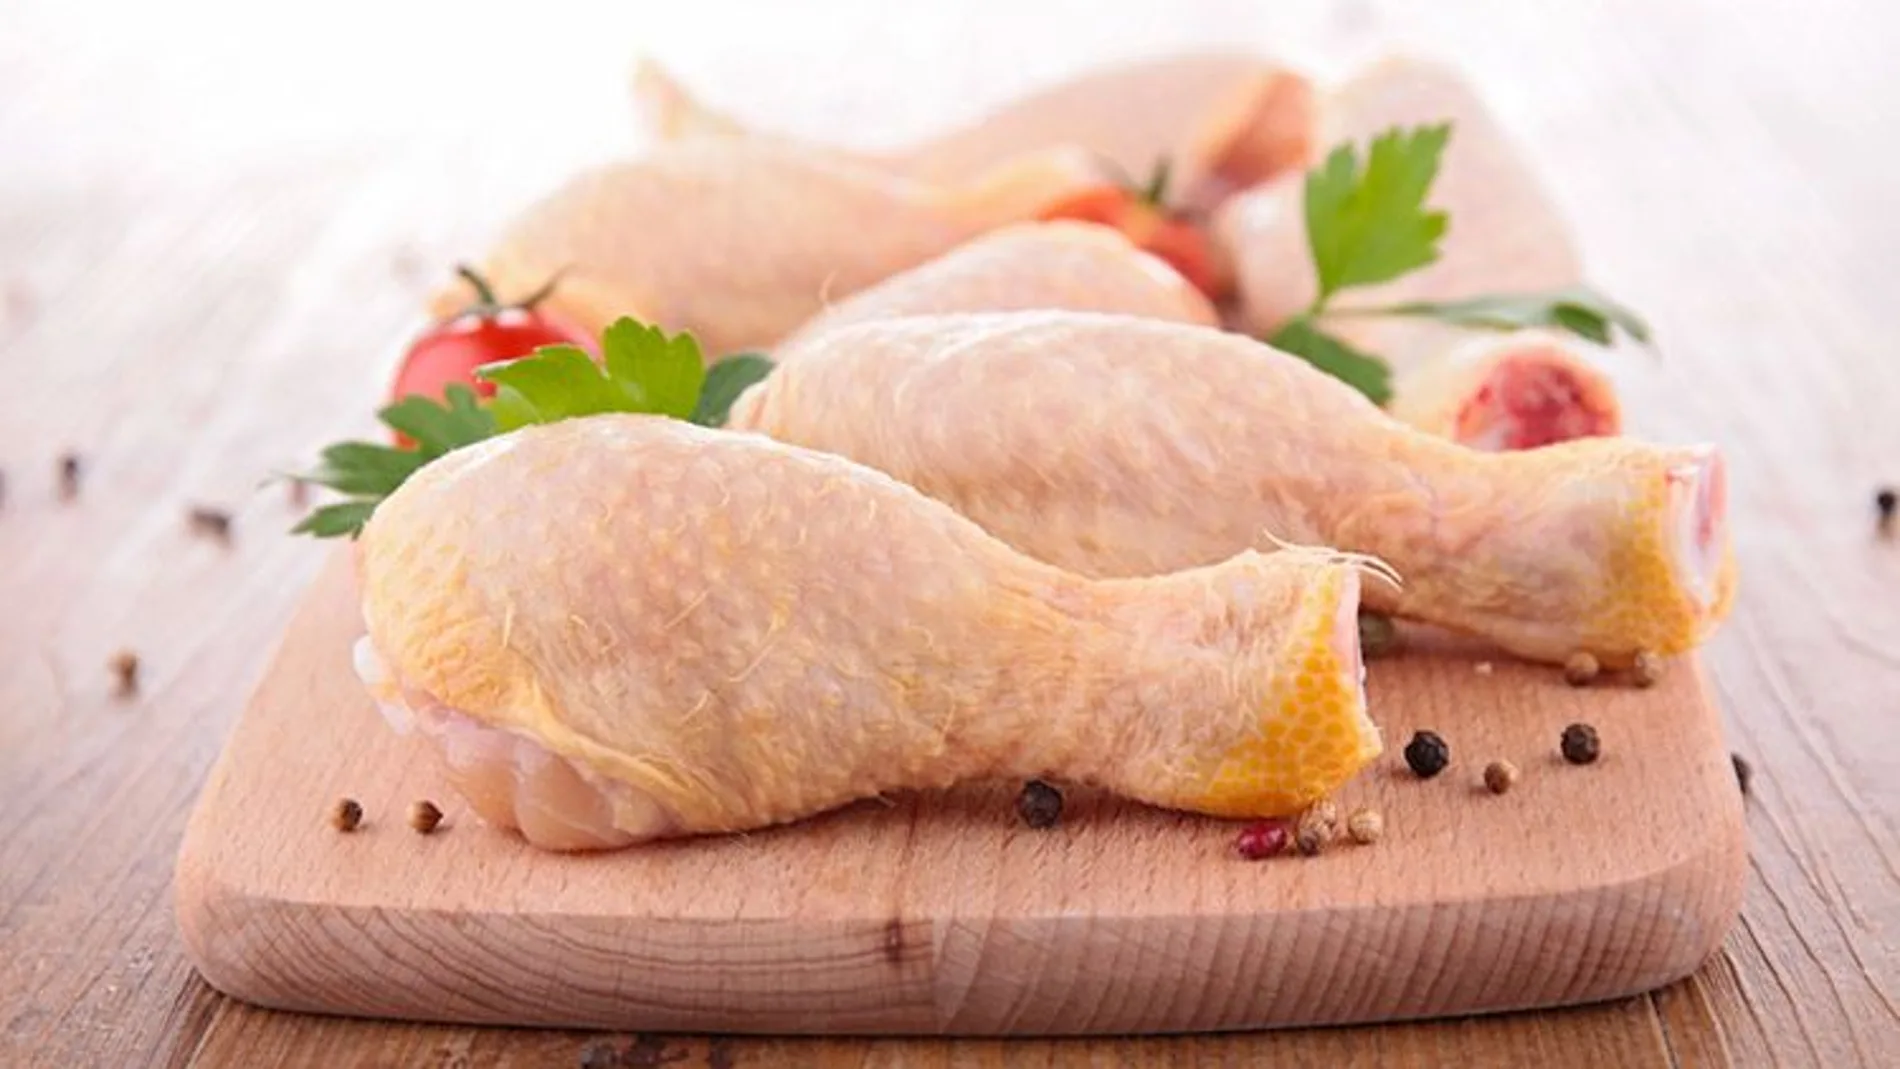 Los peligros para la salud de limpiar el pollo con agua